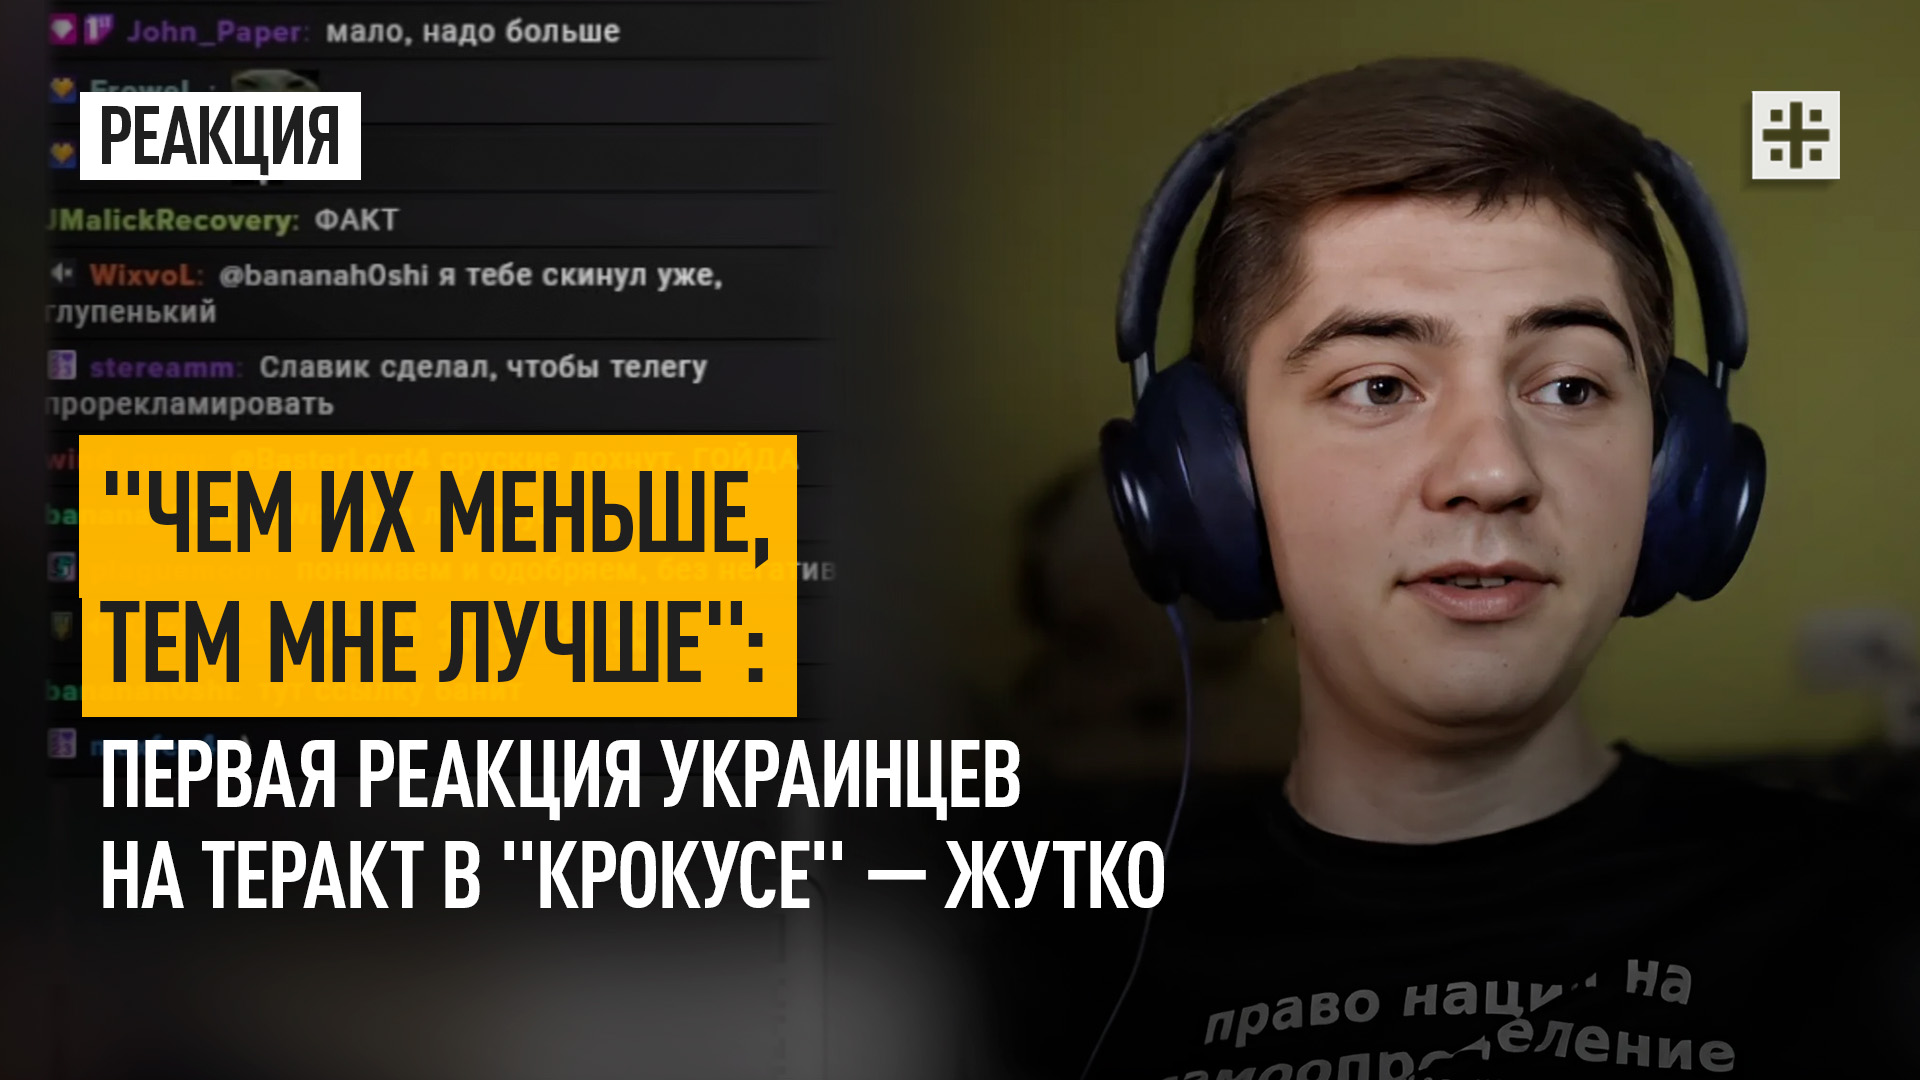 "Чем их меньше, тем мне лучше": Первая реакция украинцев на теракт в "Крокусе" — жутко